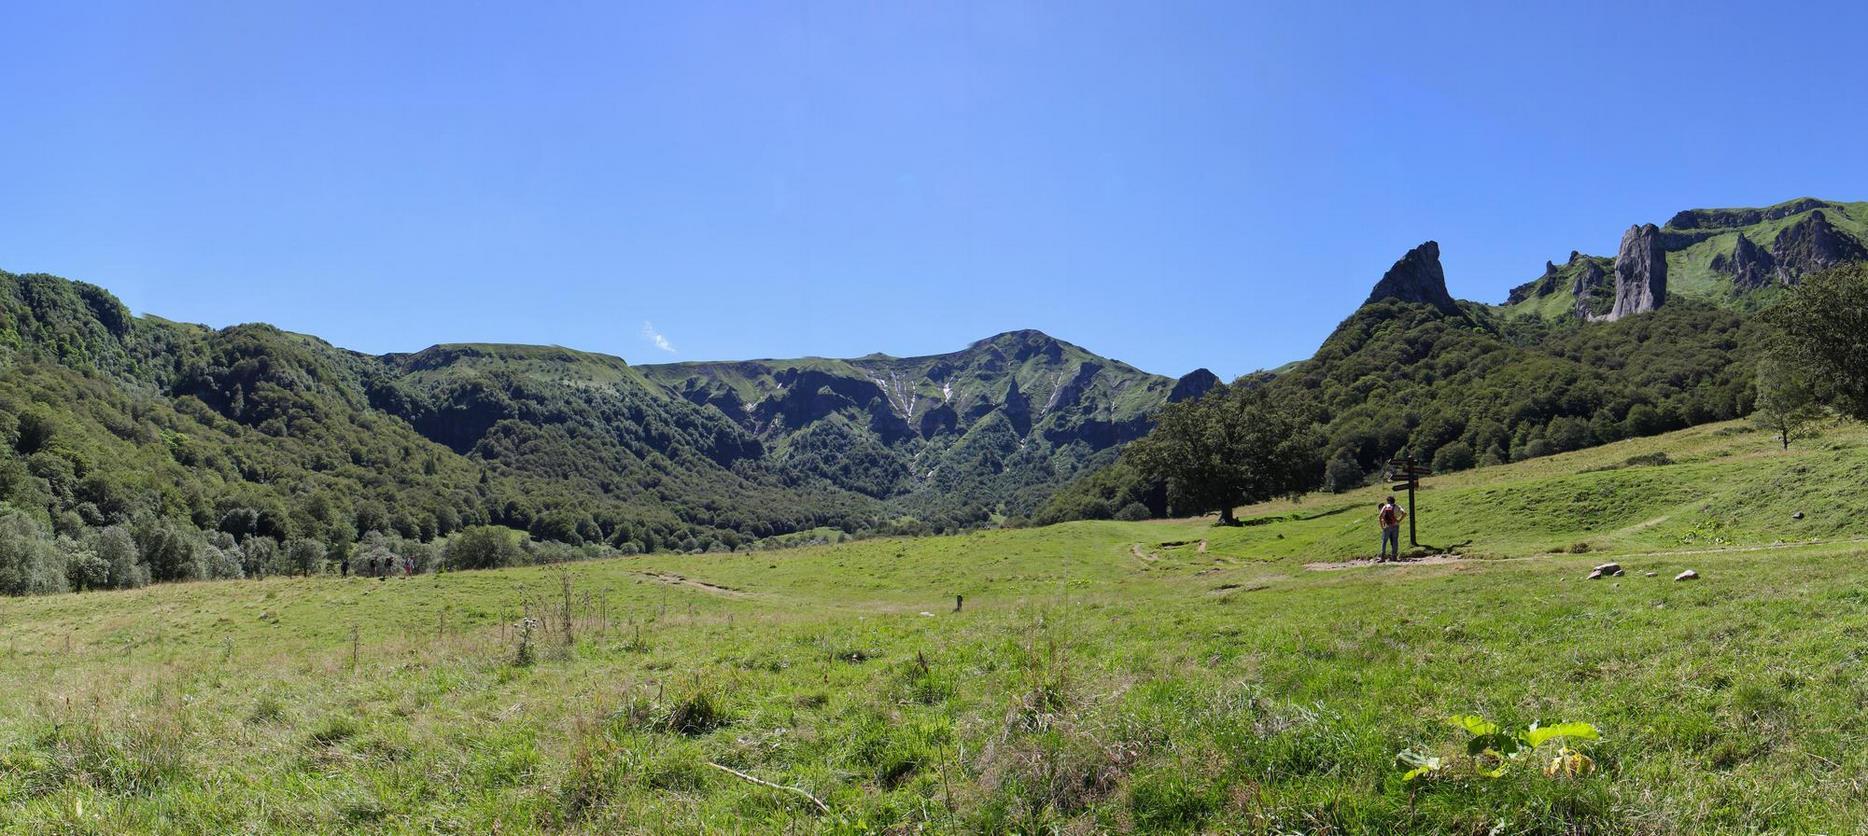 Super Besse - Walk in the Chaudefour Valley